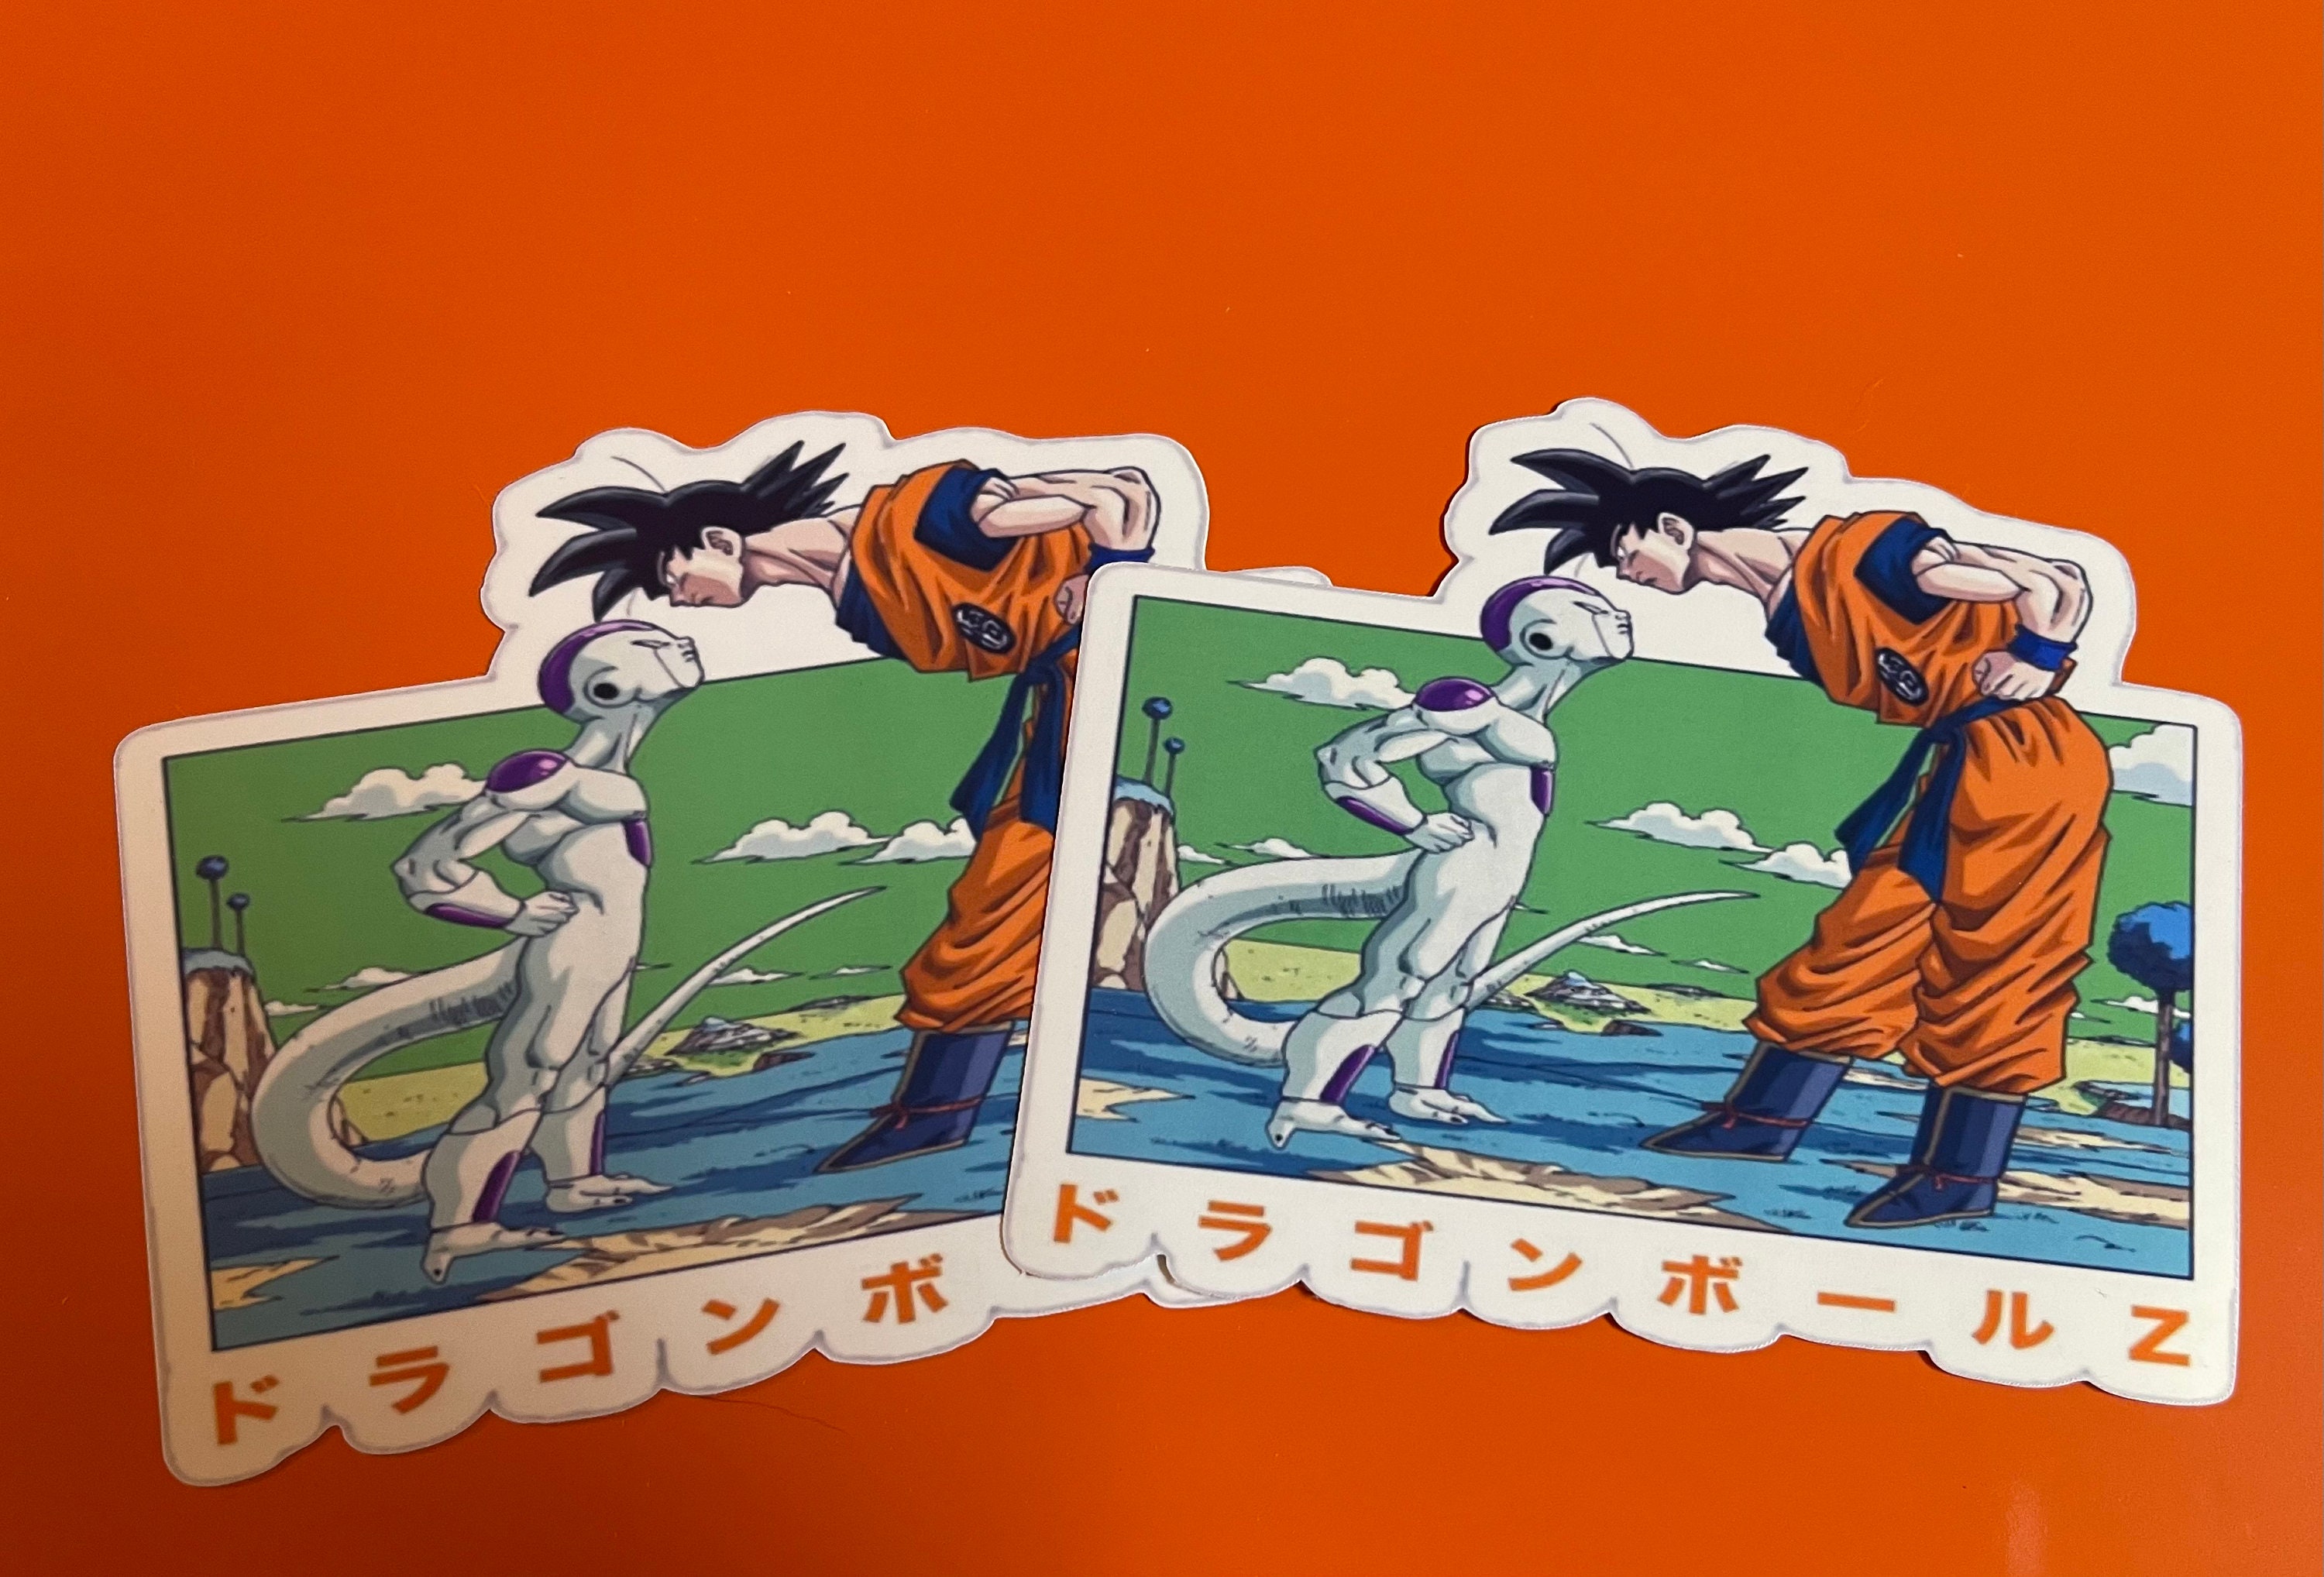 Dragon Ball Son Goku Sticker by NameYourWorld